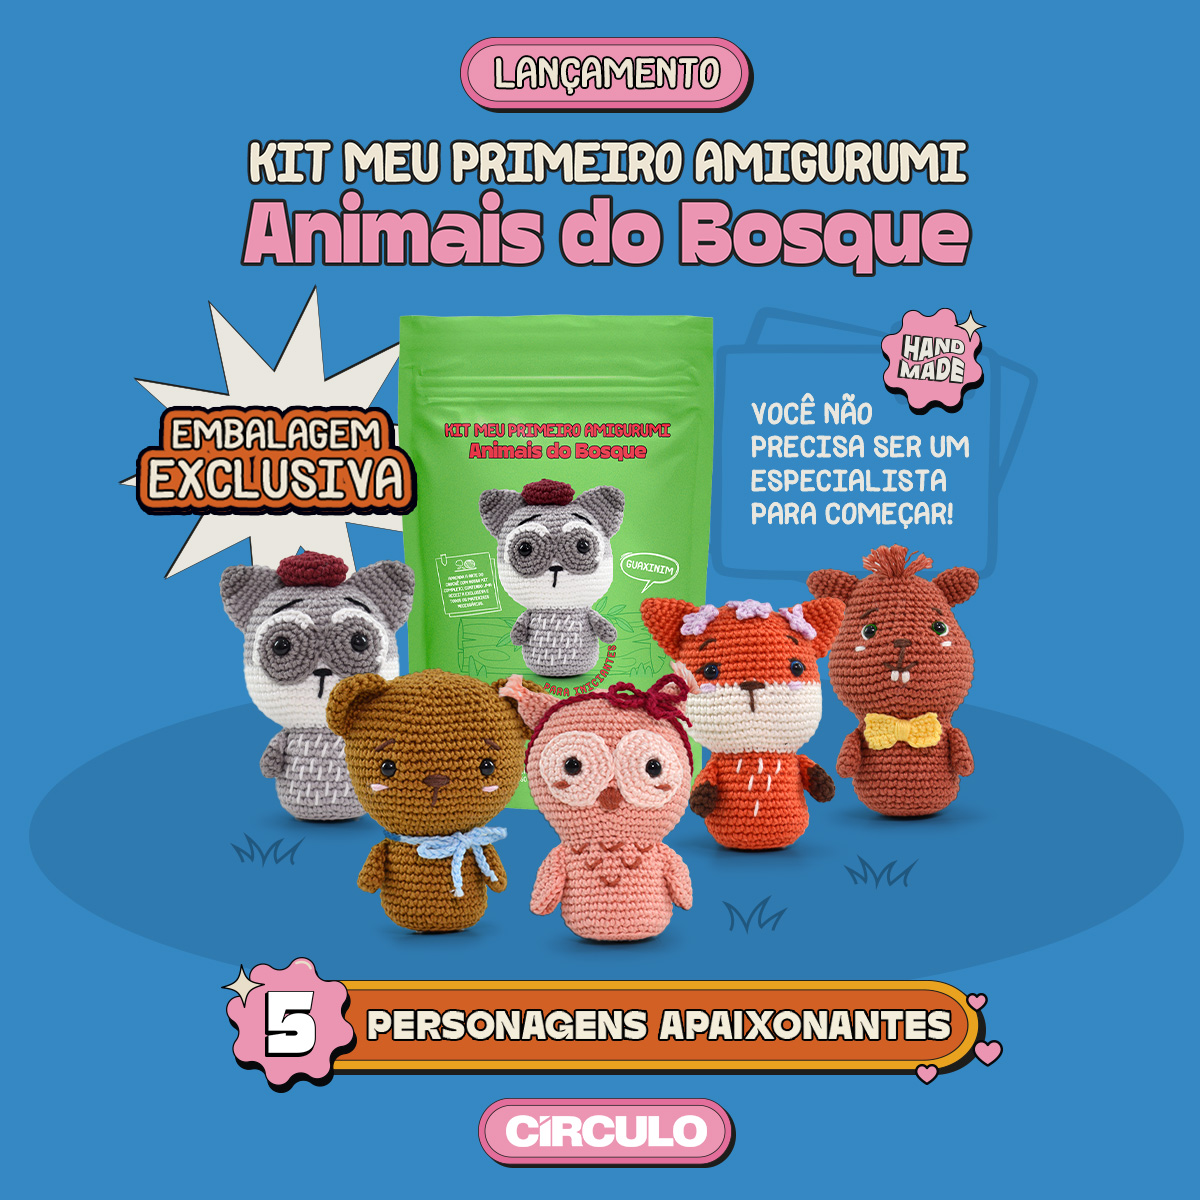 Lançamento: Kit Meu Primeiro Amigurumi Coleção Animais do Bosque